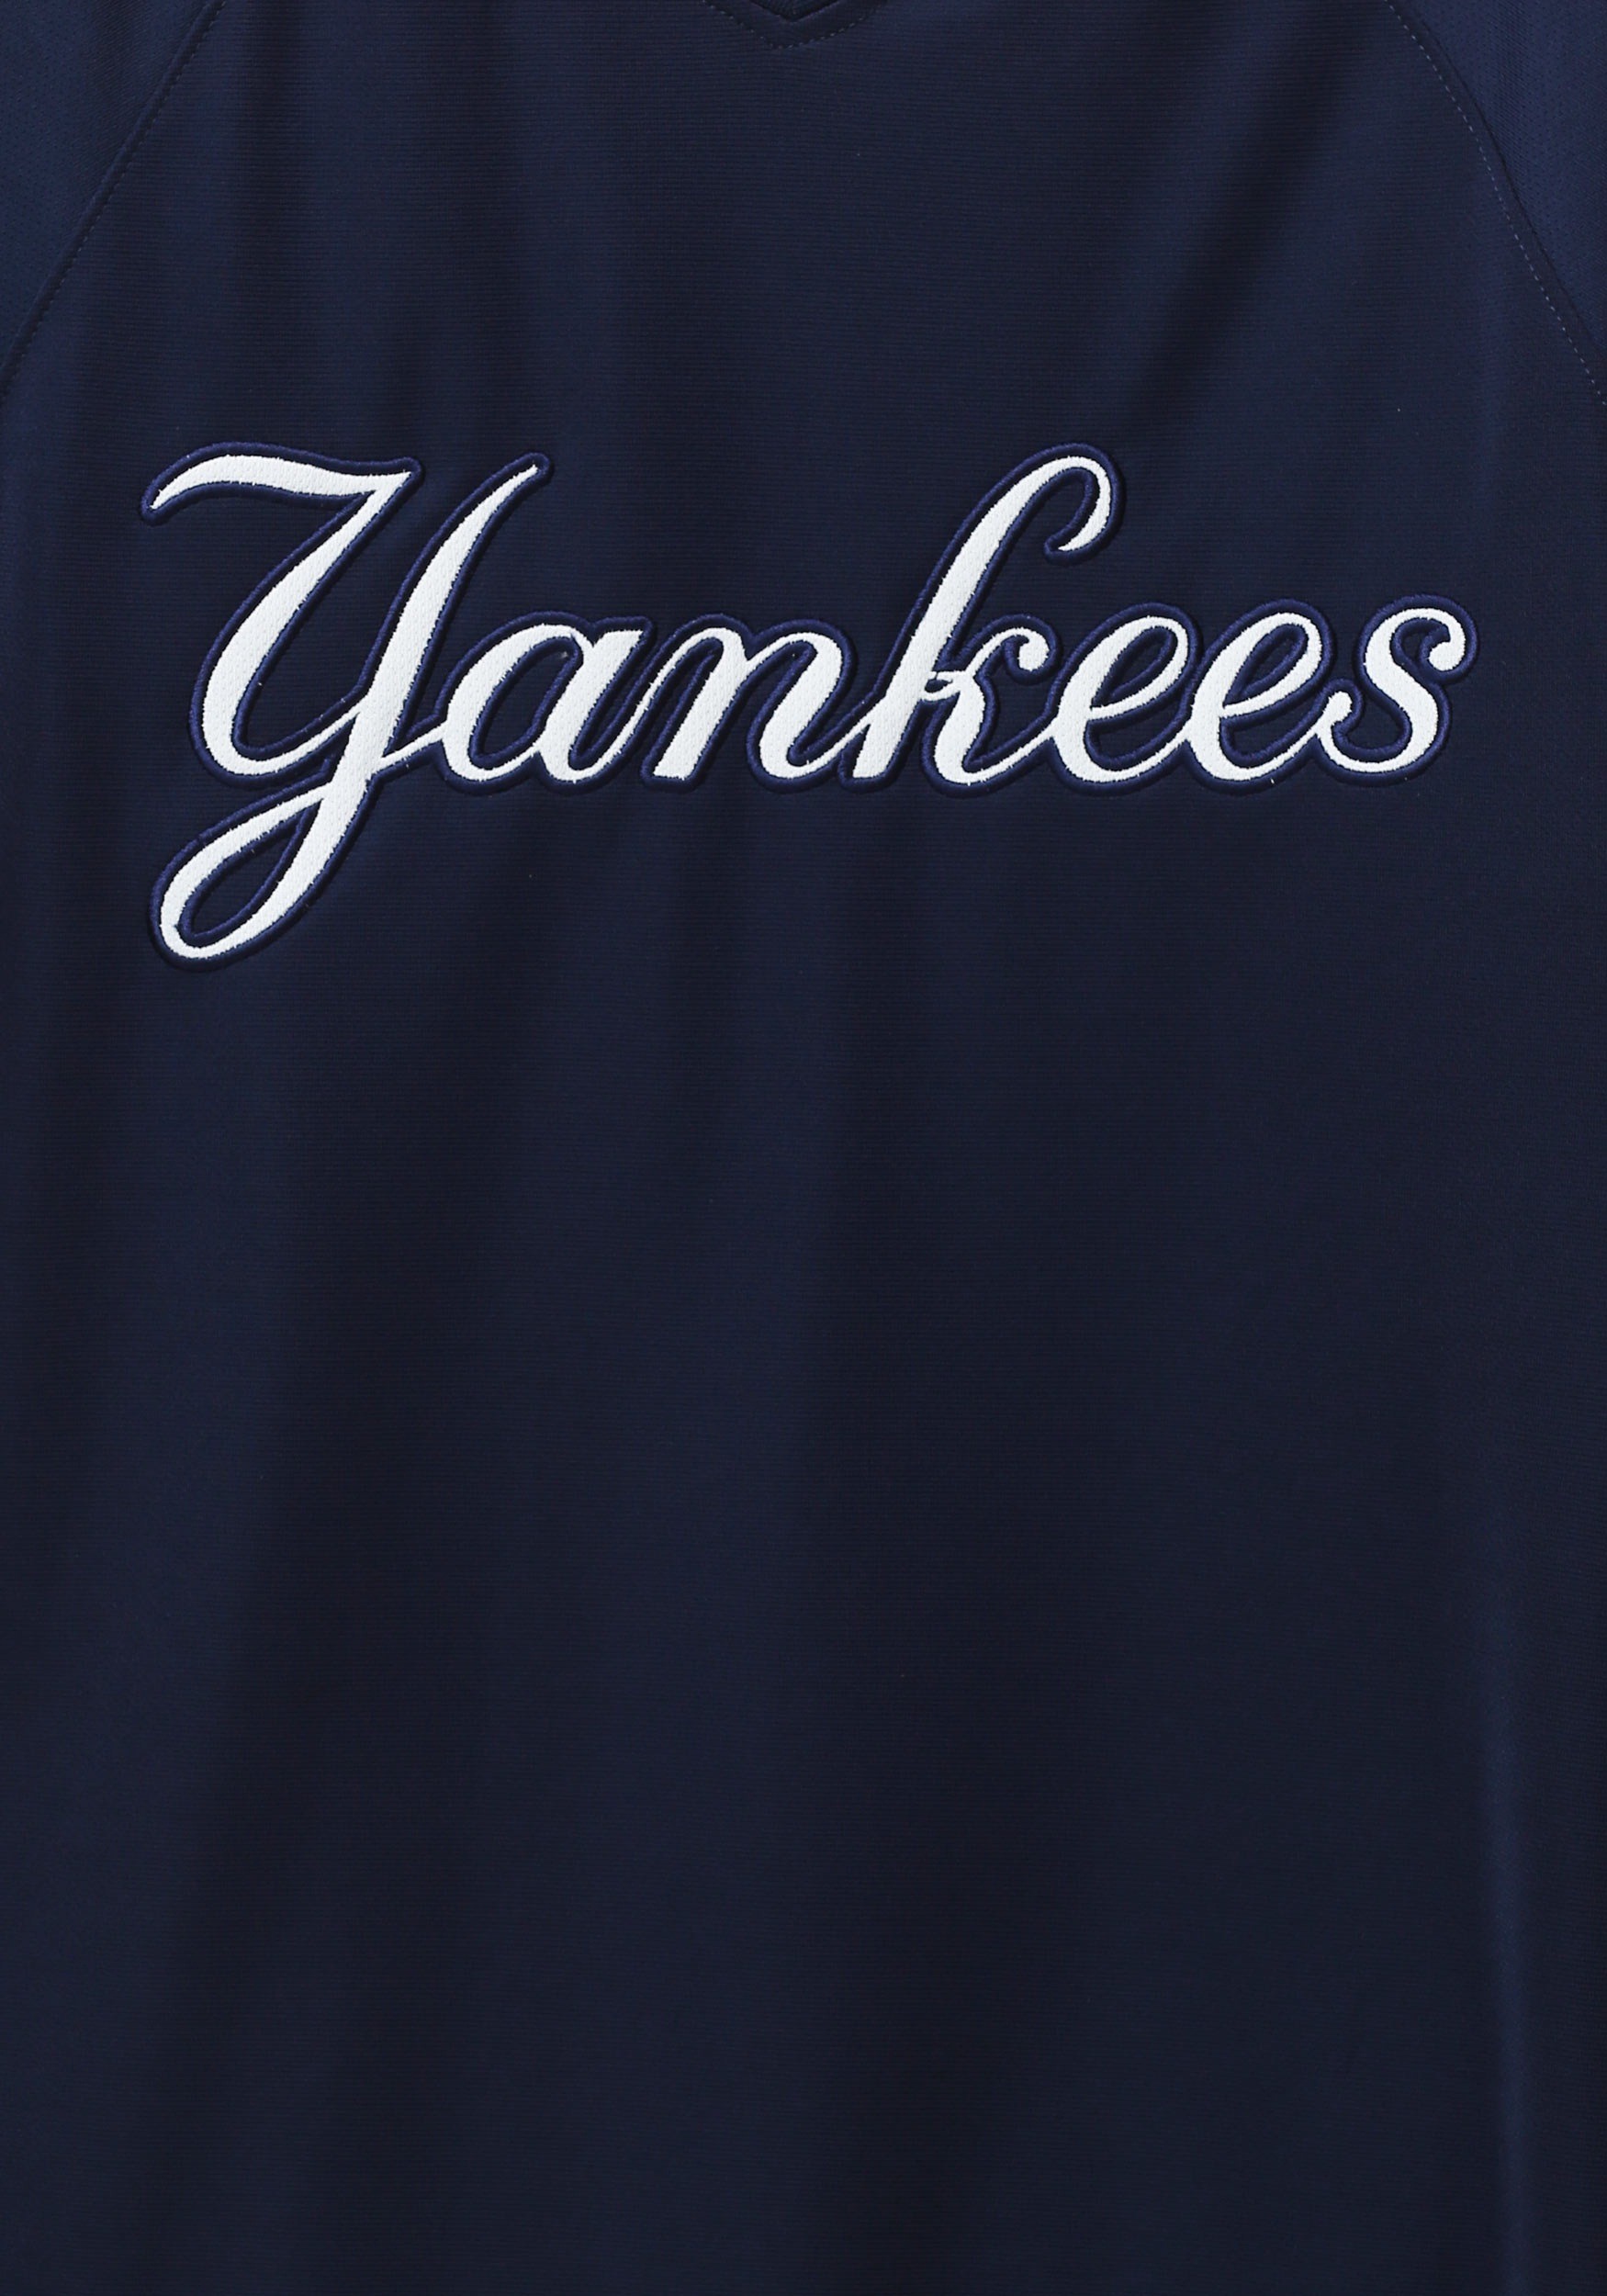 New Yankees Men's T-Shirt